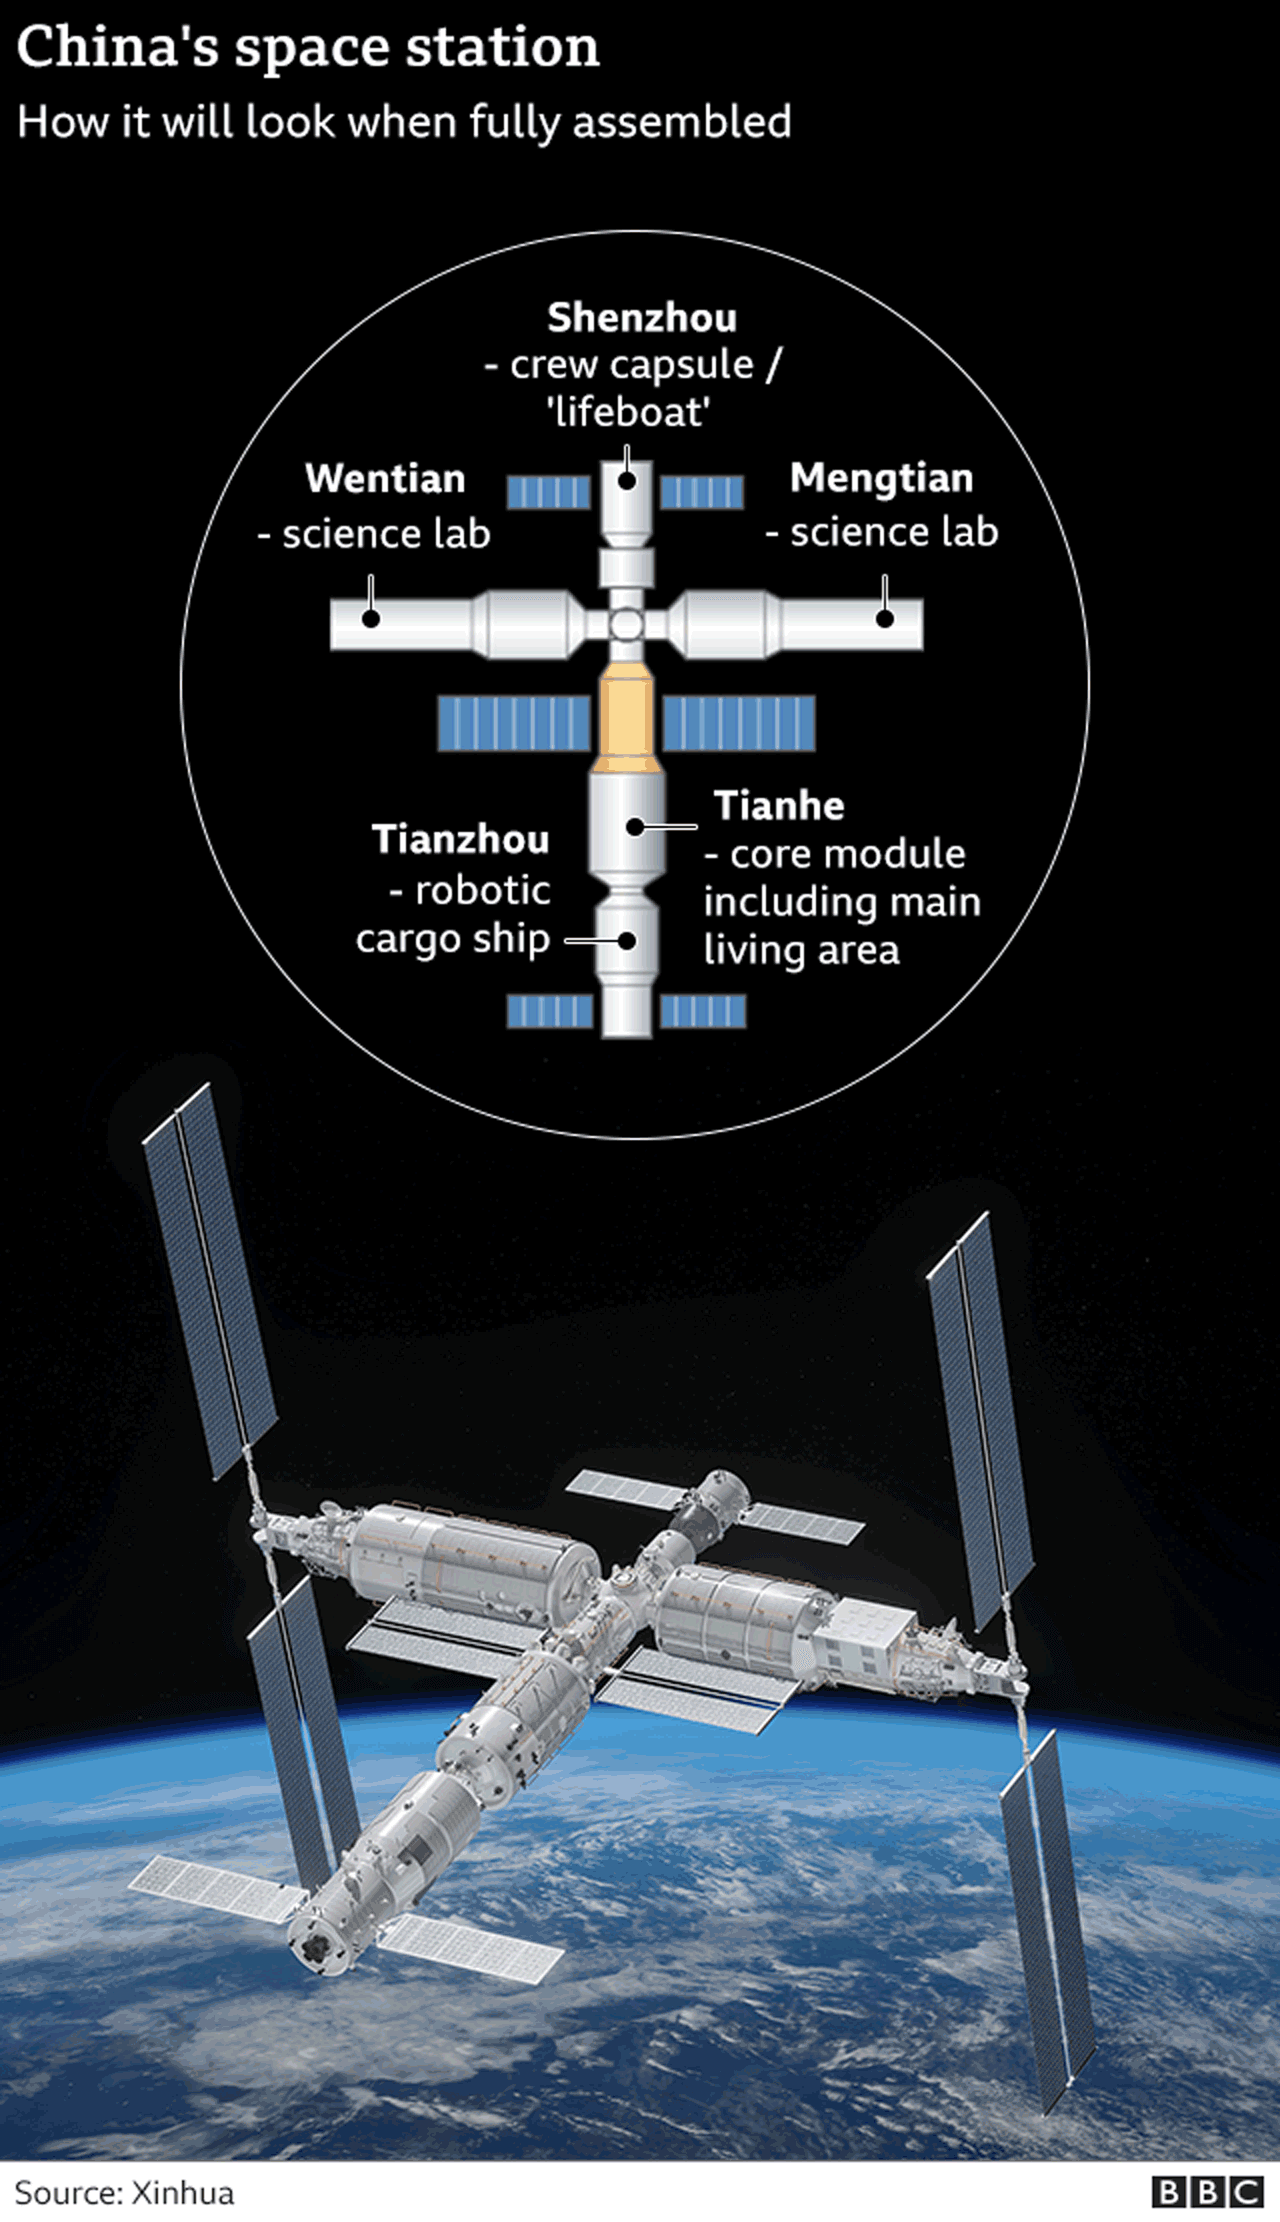 Gráfico mostrando os principais elementos da estação espacial da China